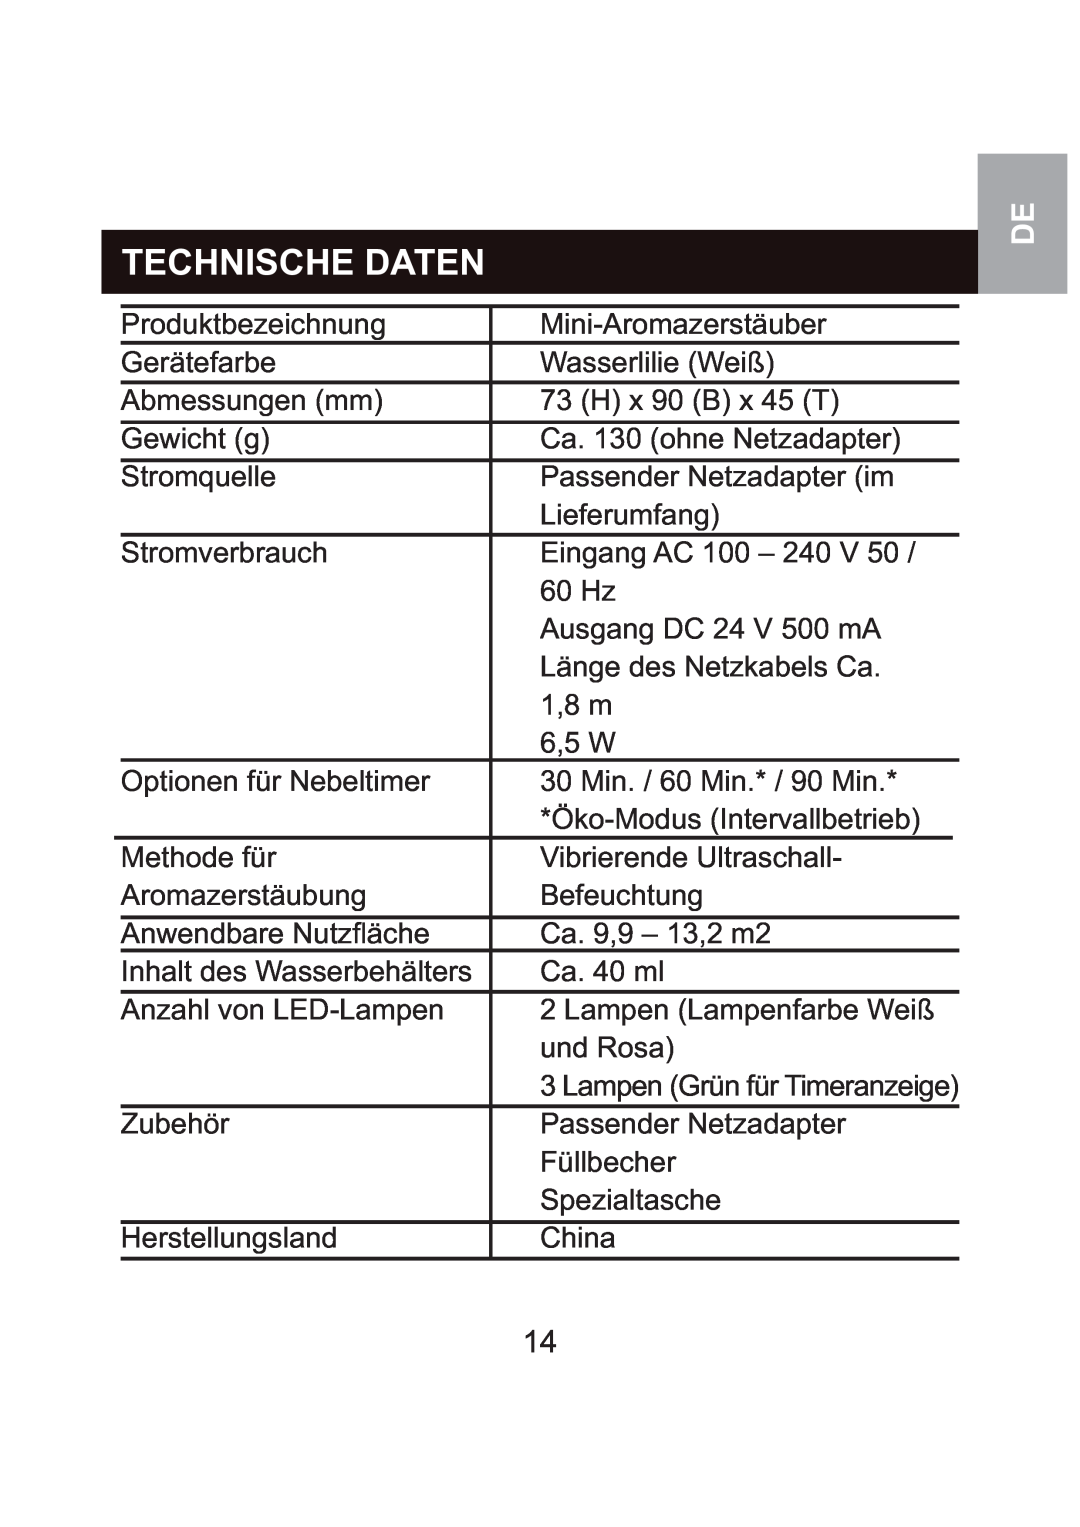 Oregon Scientific WS904 user manual Technische Daten 